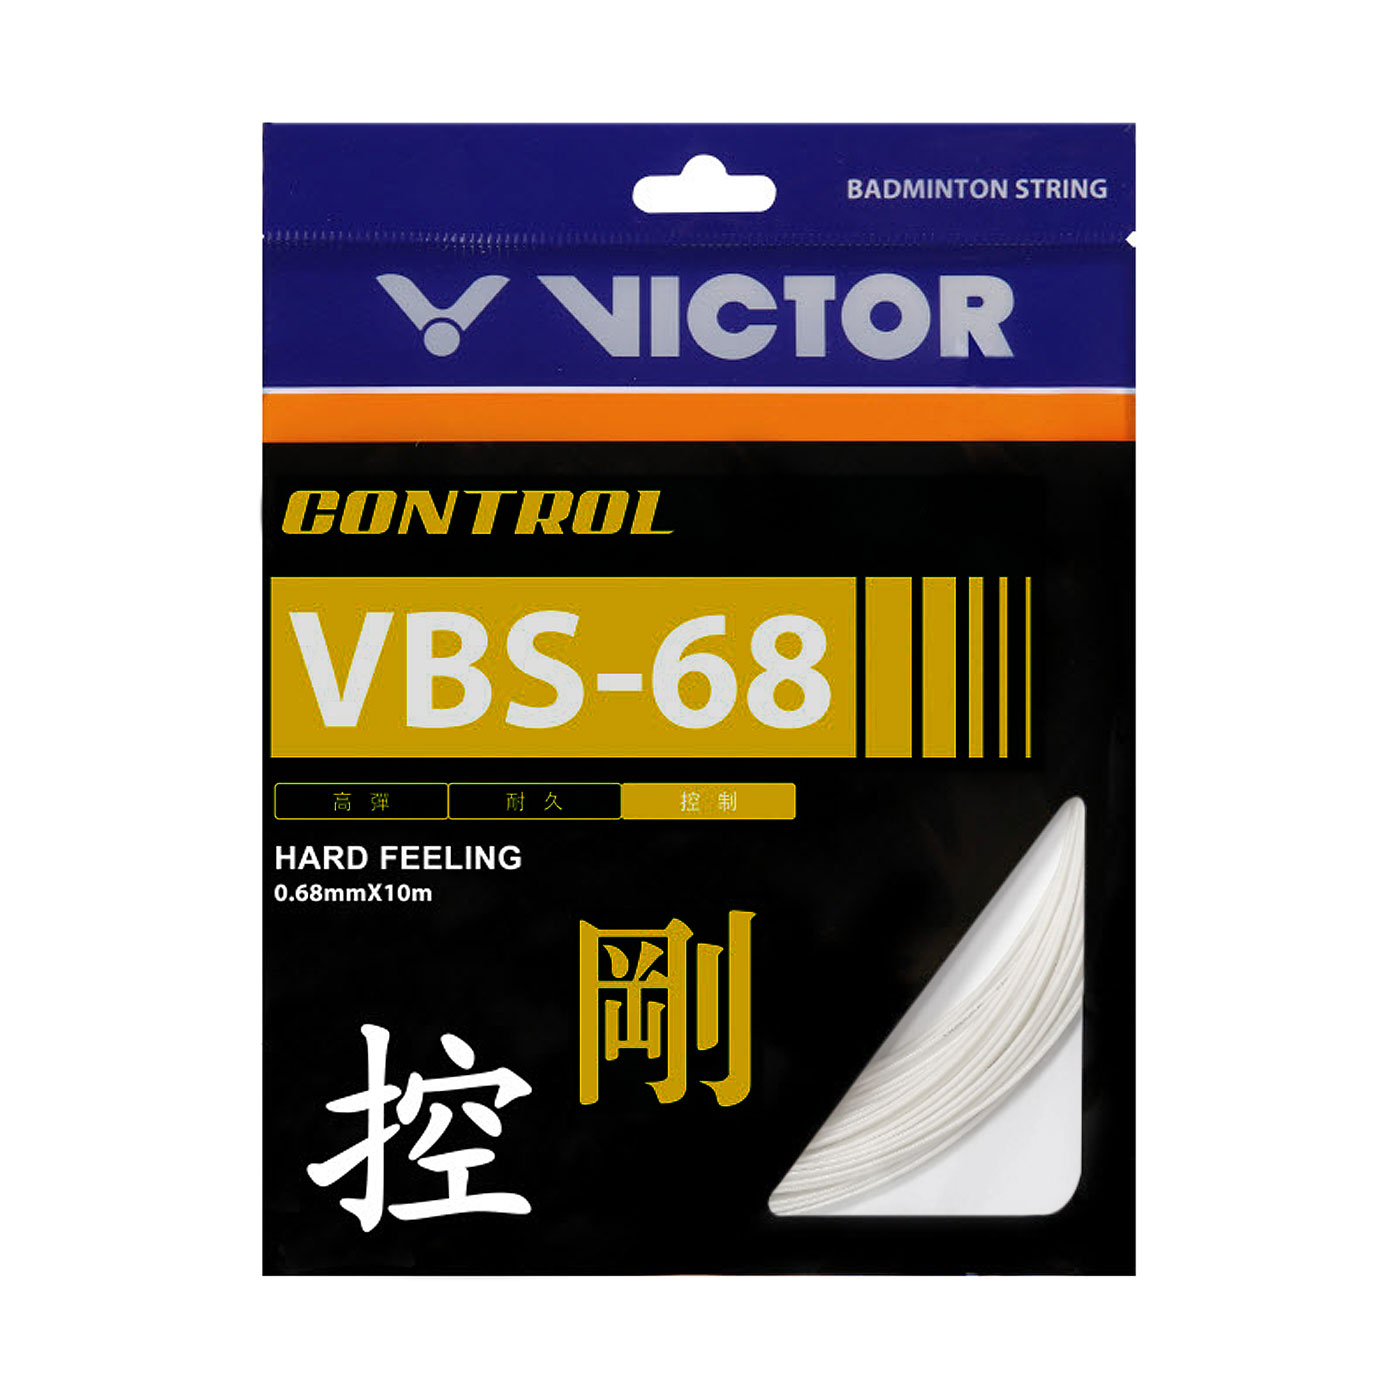 VICTOR 控制羽拍線-剛 VBS-68-A - 白